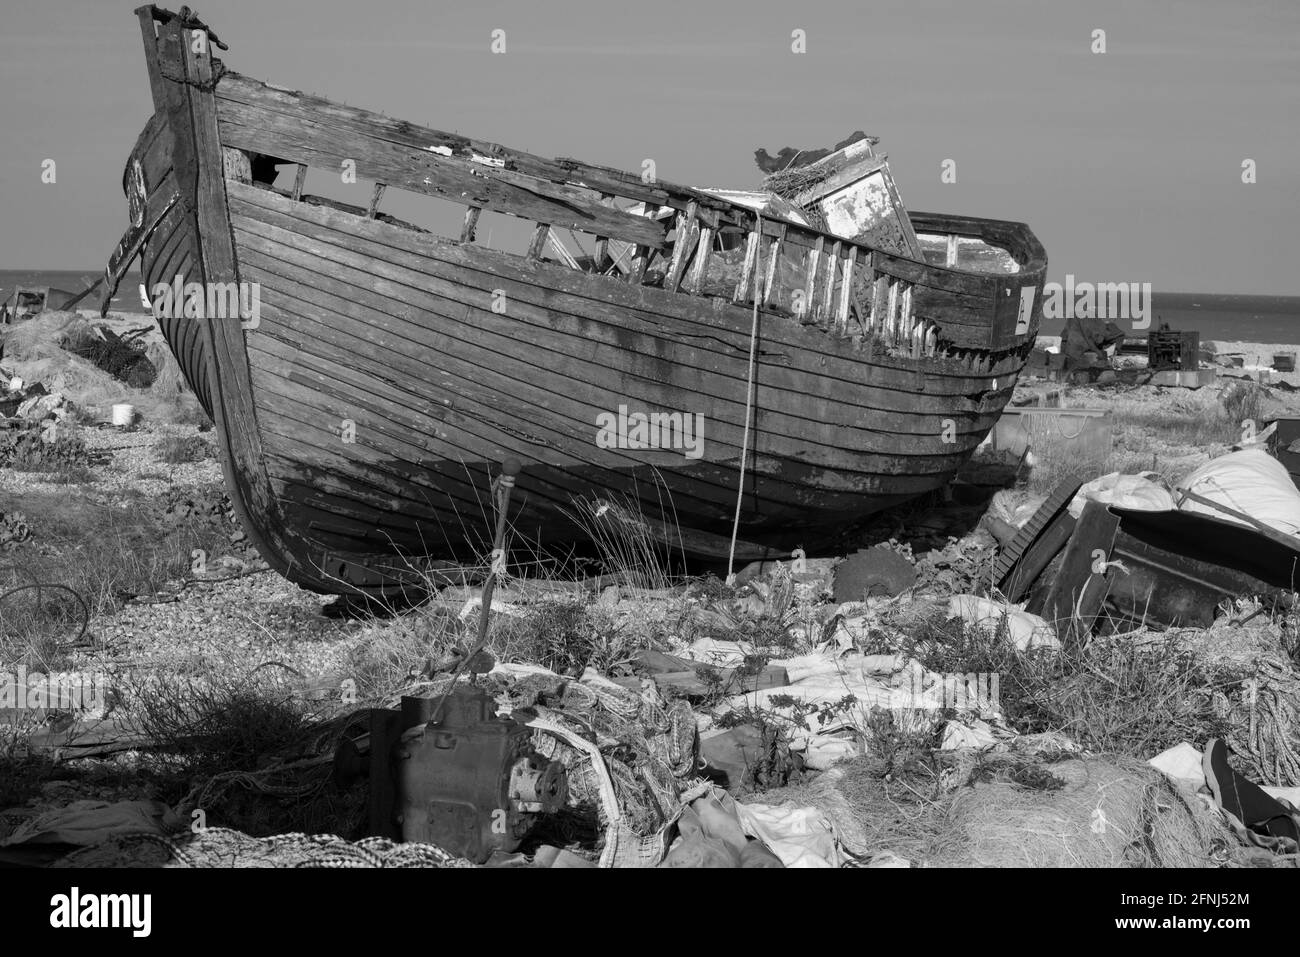 Monobild des kleinen Fischerbootes alt und hoch und trocken und verrottet auf einem Kiesstrand, umgeben von zerbrochenen, rostenden und weggeworfenen Geräten Stockfoto